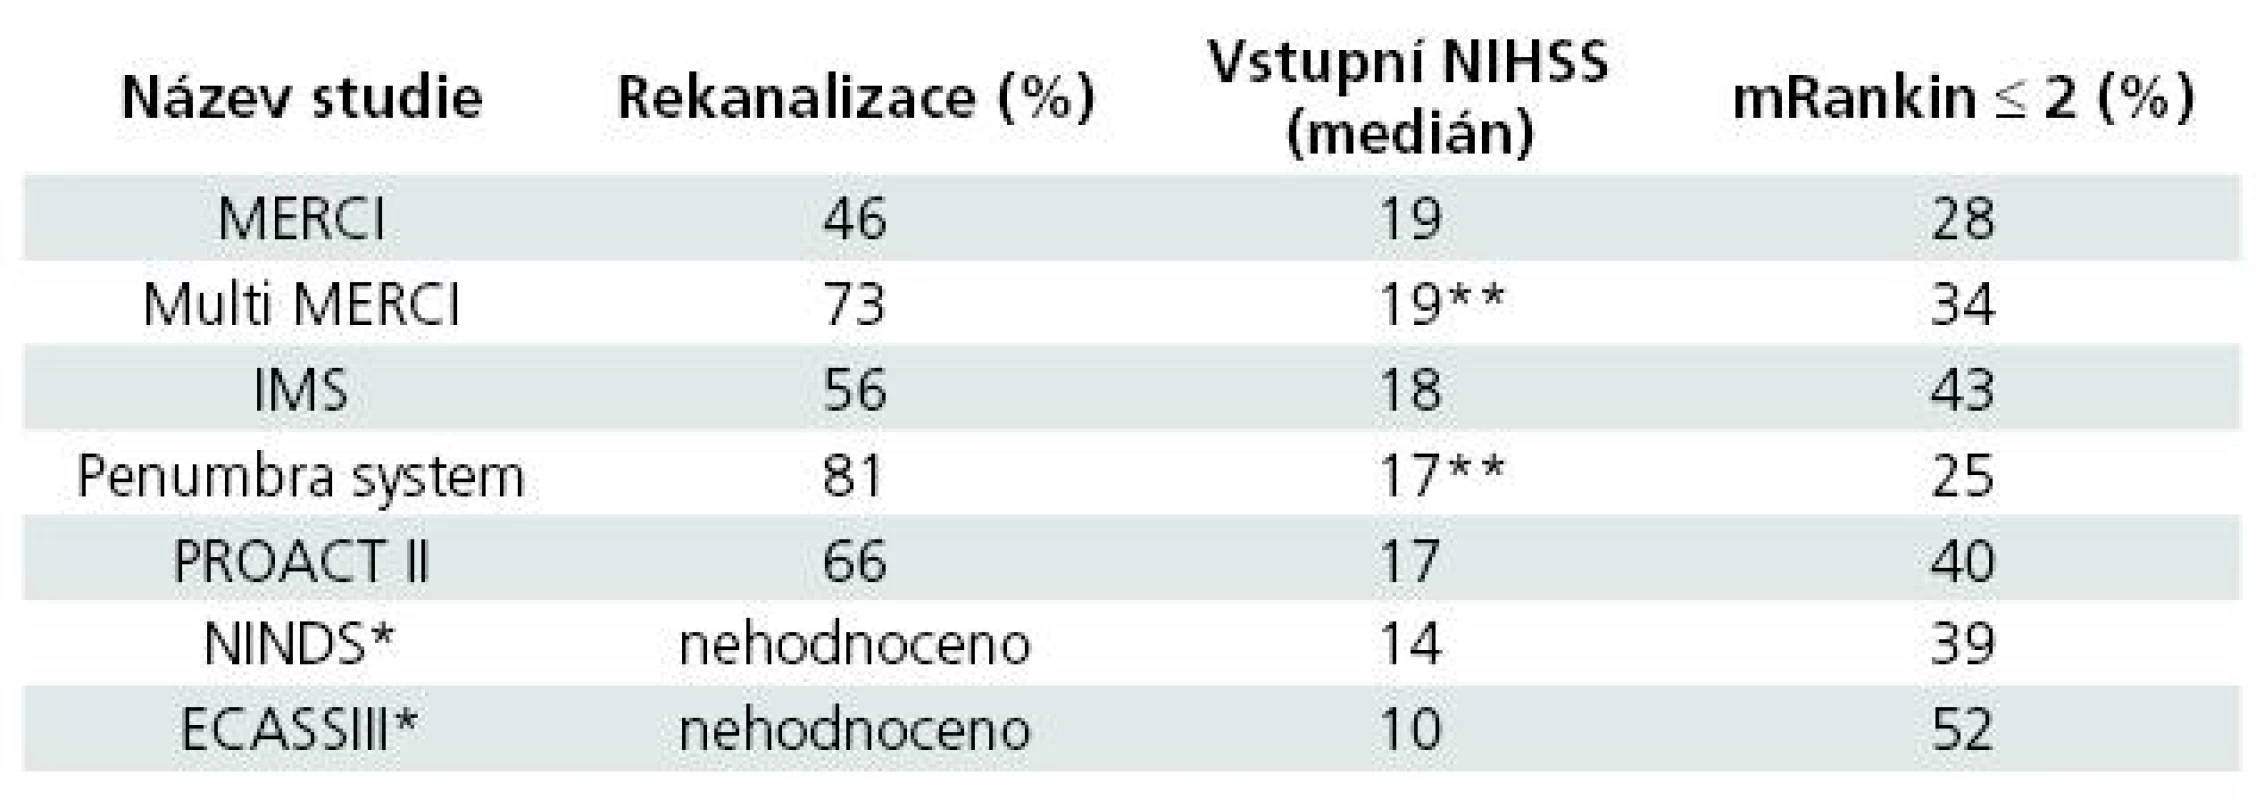 Srovnání klinického stavu a % rekanalizace v proběhlých endovaskulárních a intravenózních studiích [2,3,5,10].